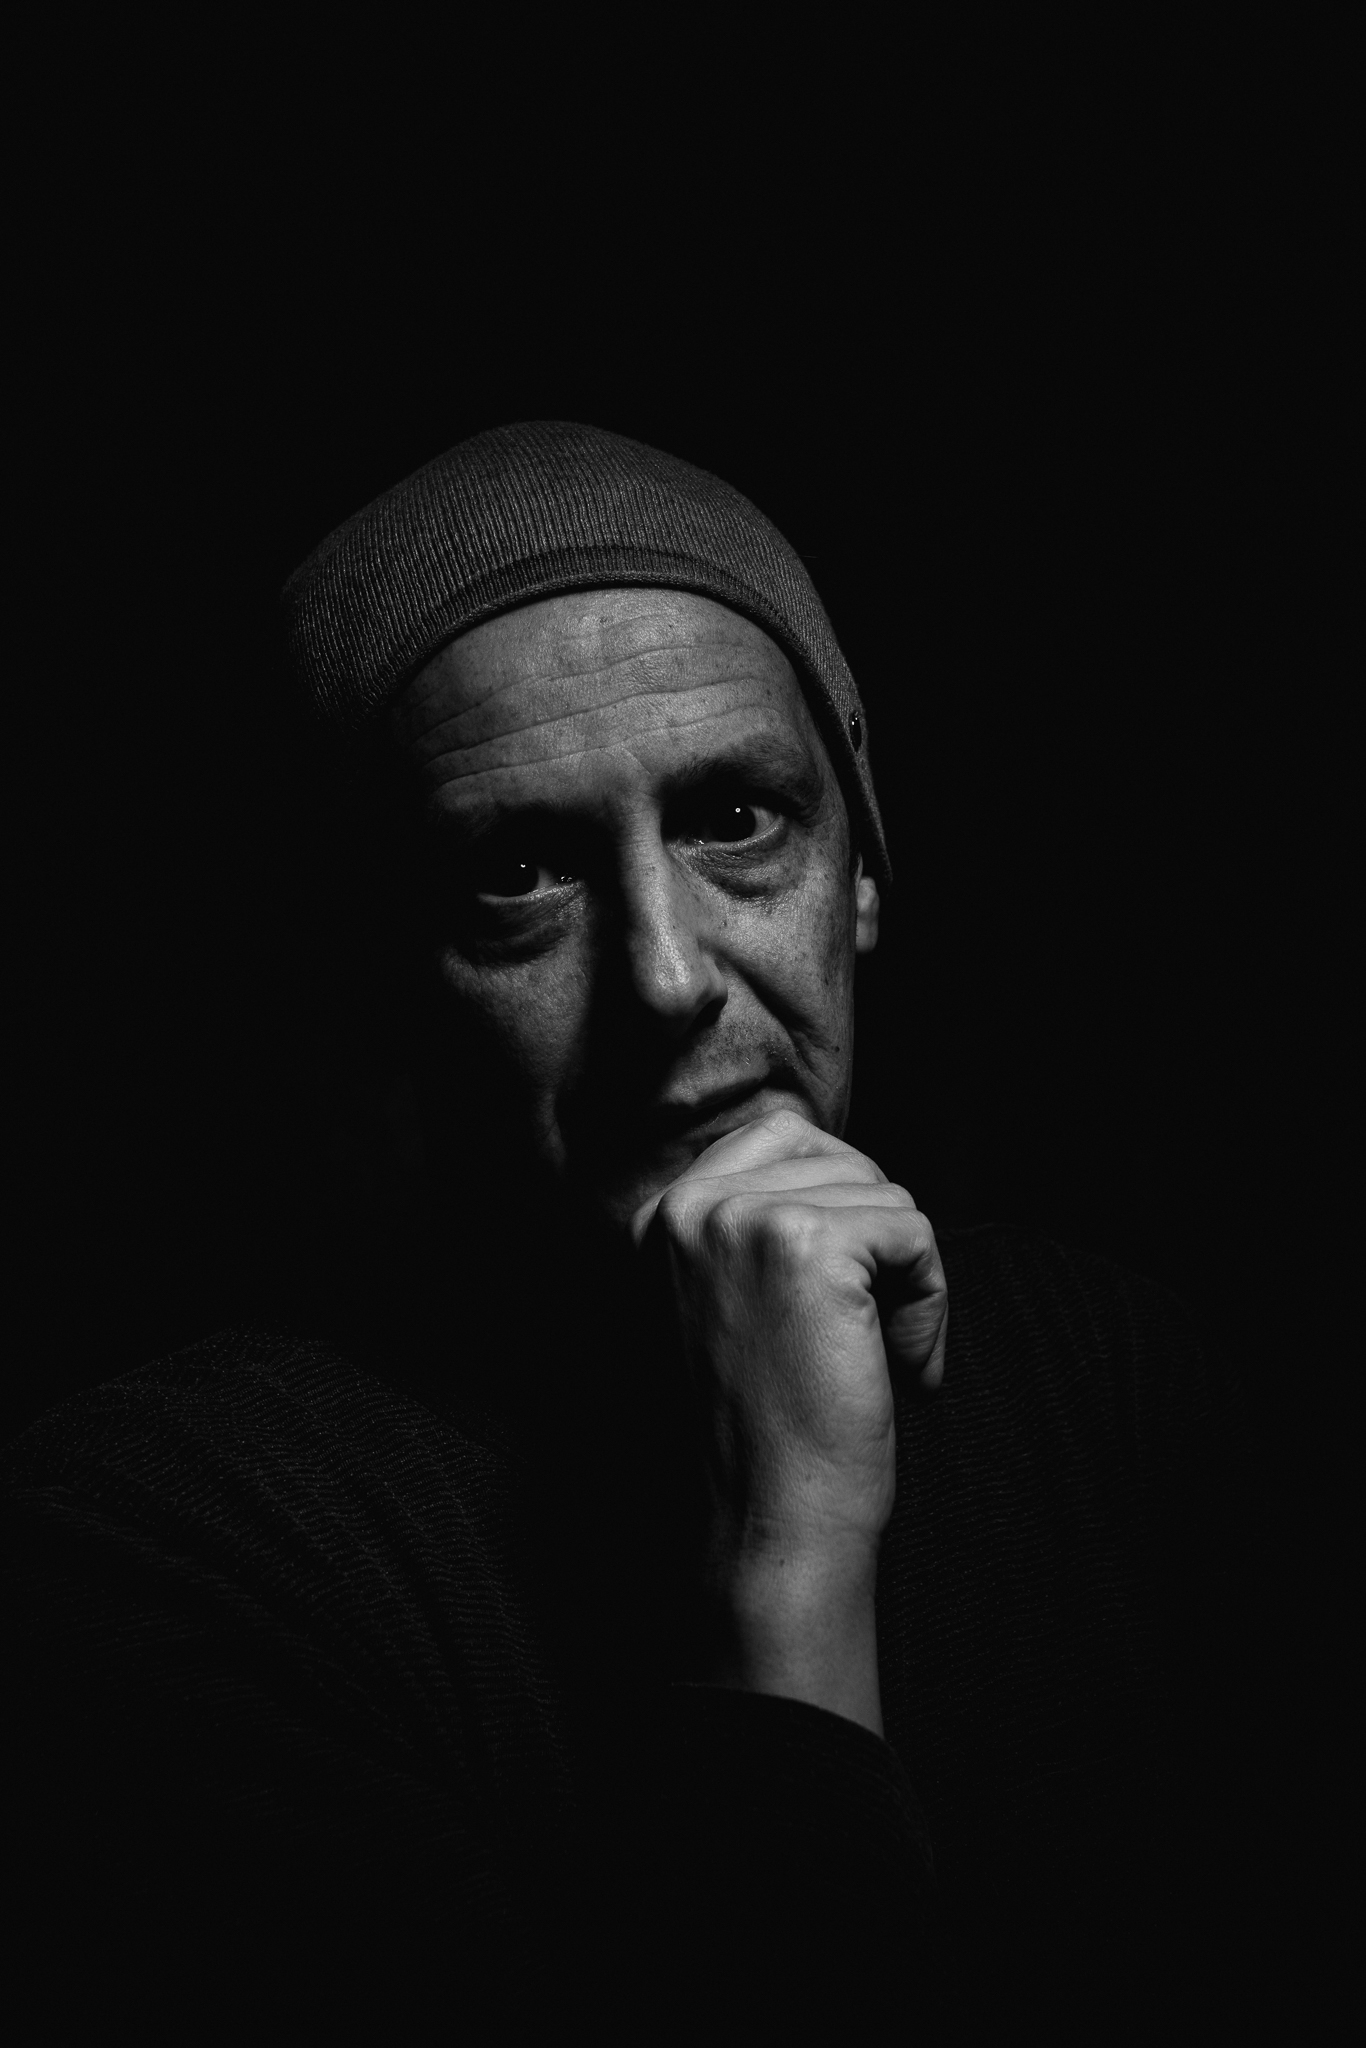 Selfie Film Noir Black and White Portrait Porträt - m-foerster.com